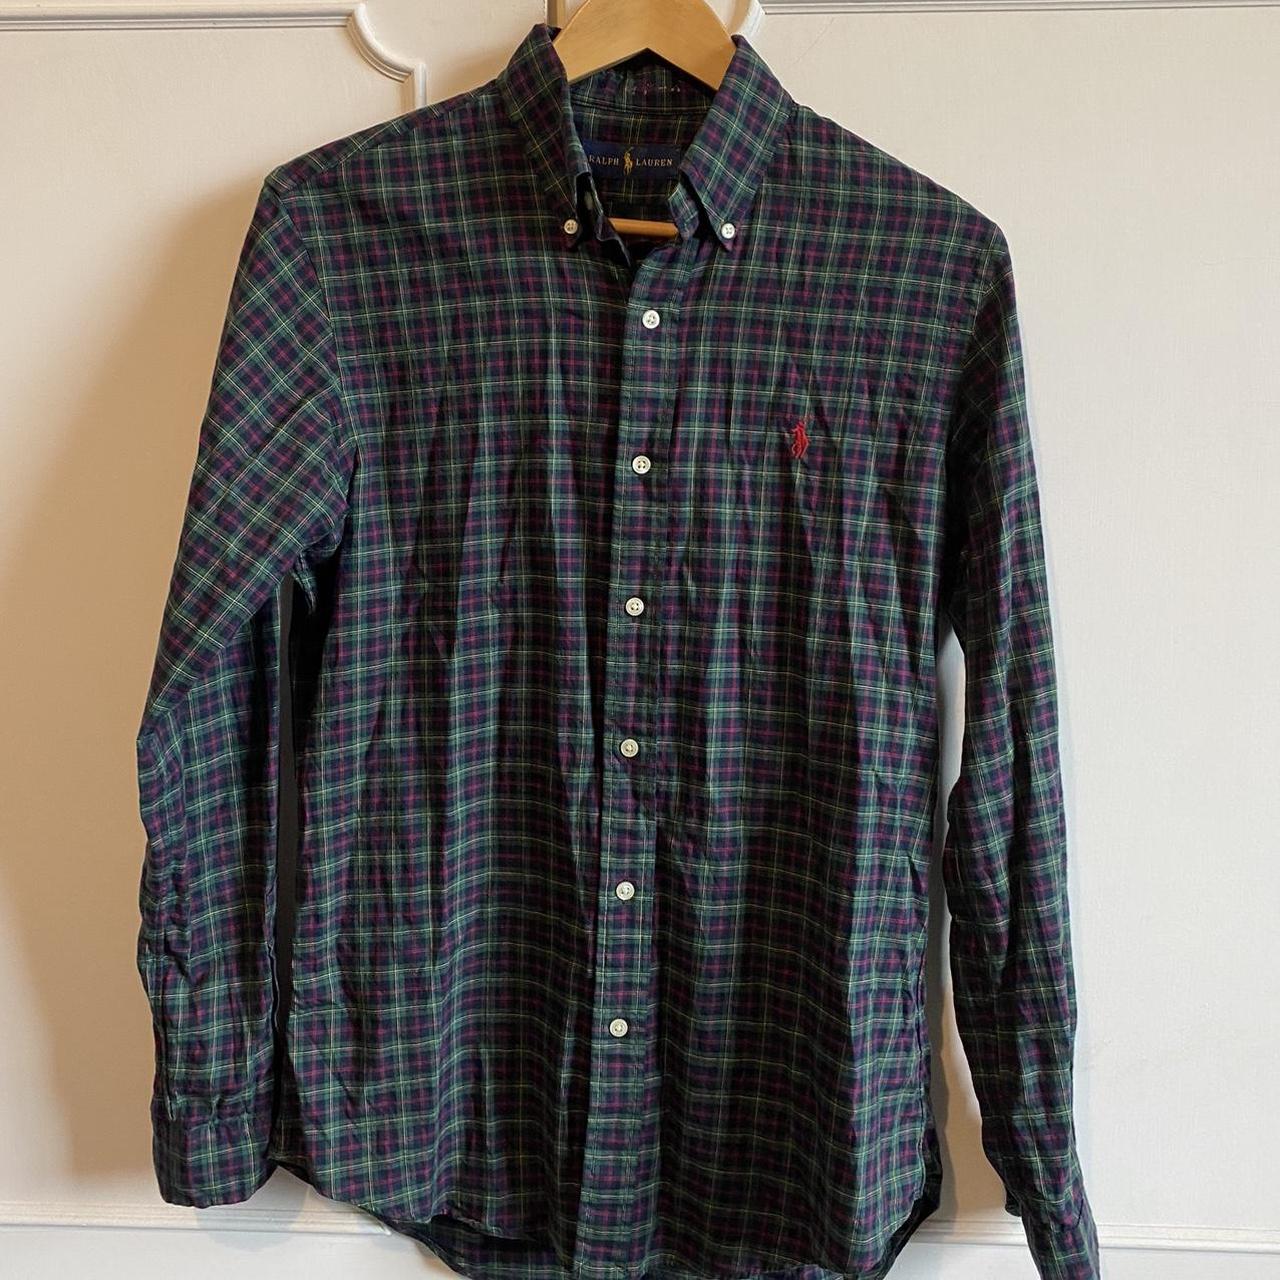 Ralph Lauren plaid shirt Size - S #ralphlauren - Depop